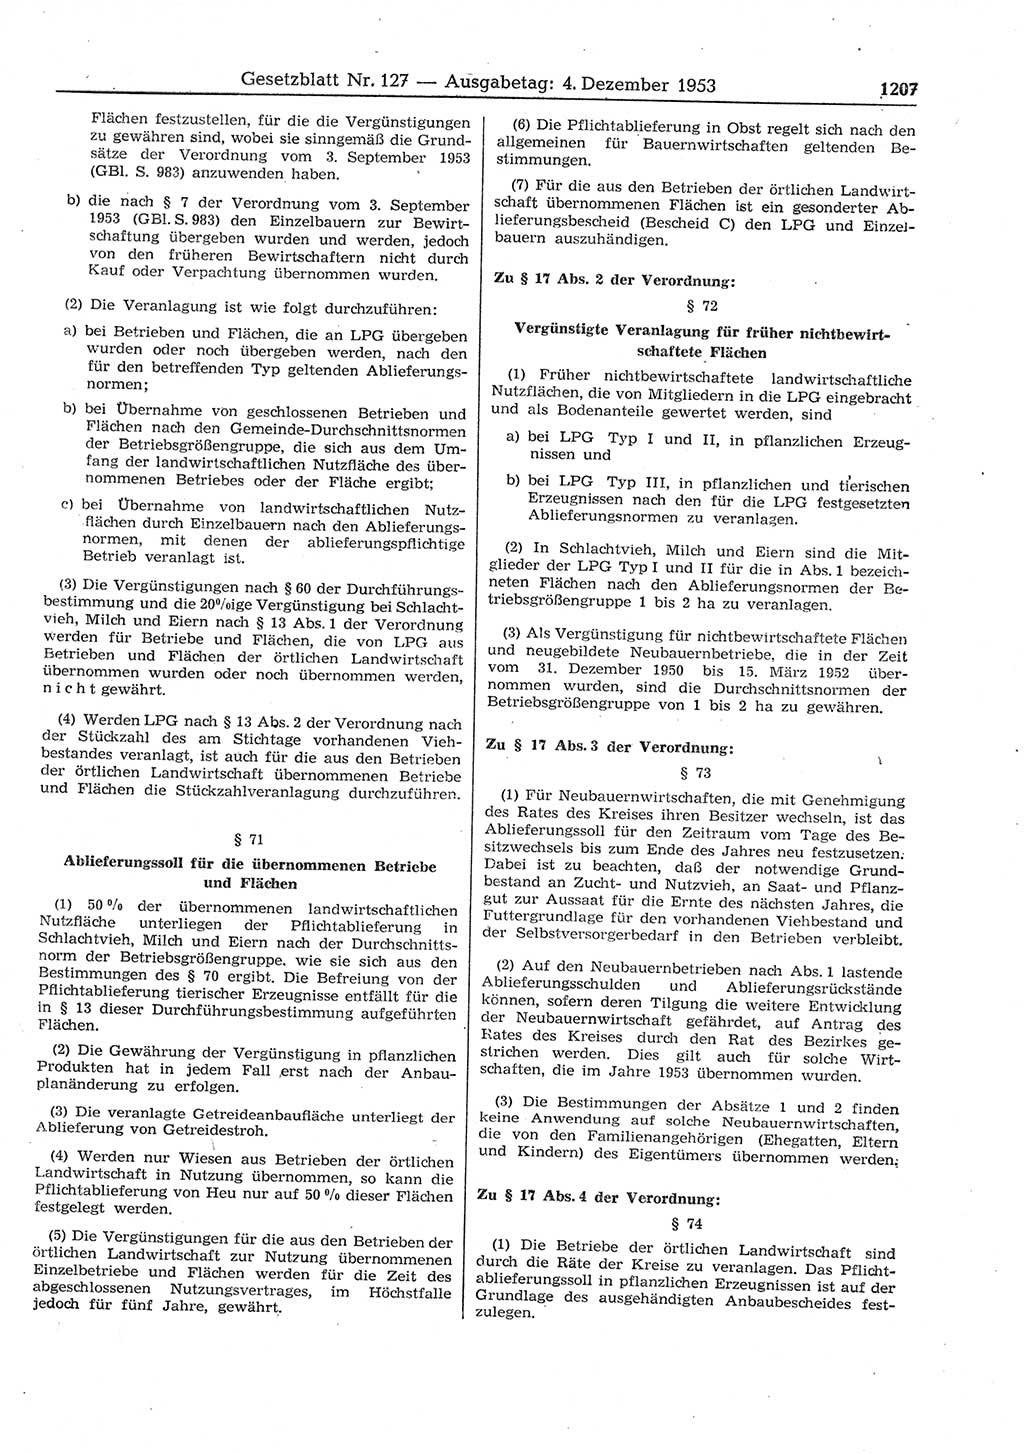 Gesetzblatt (GBl.) der Deutschen Demokratischen Republik (DDR) 1953, Seite 1207 (GBl. DDR 1953, S. 1207)